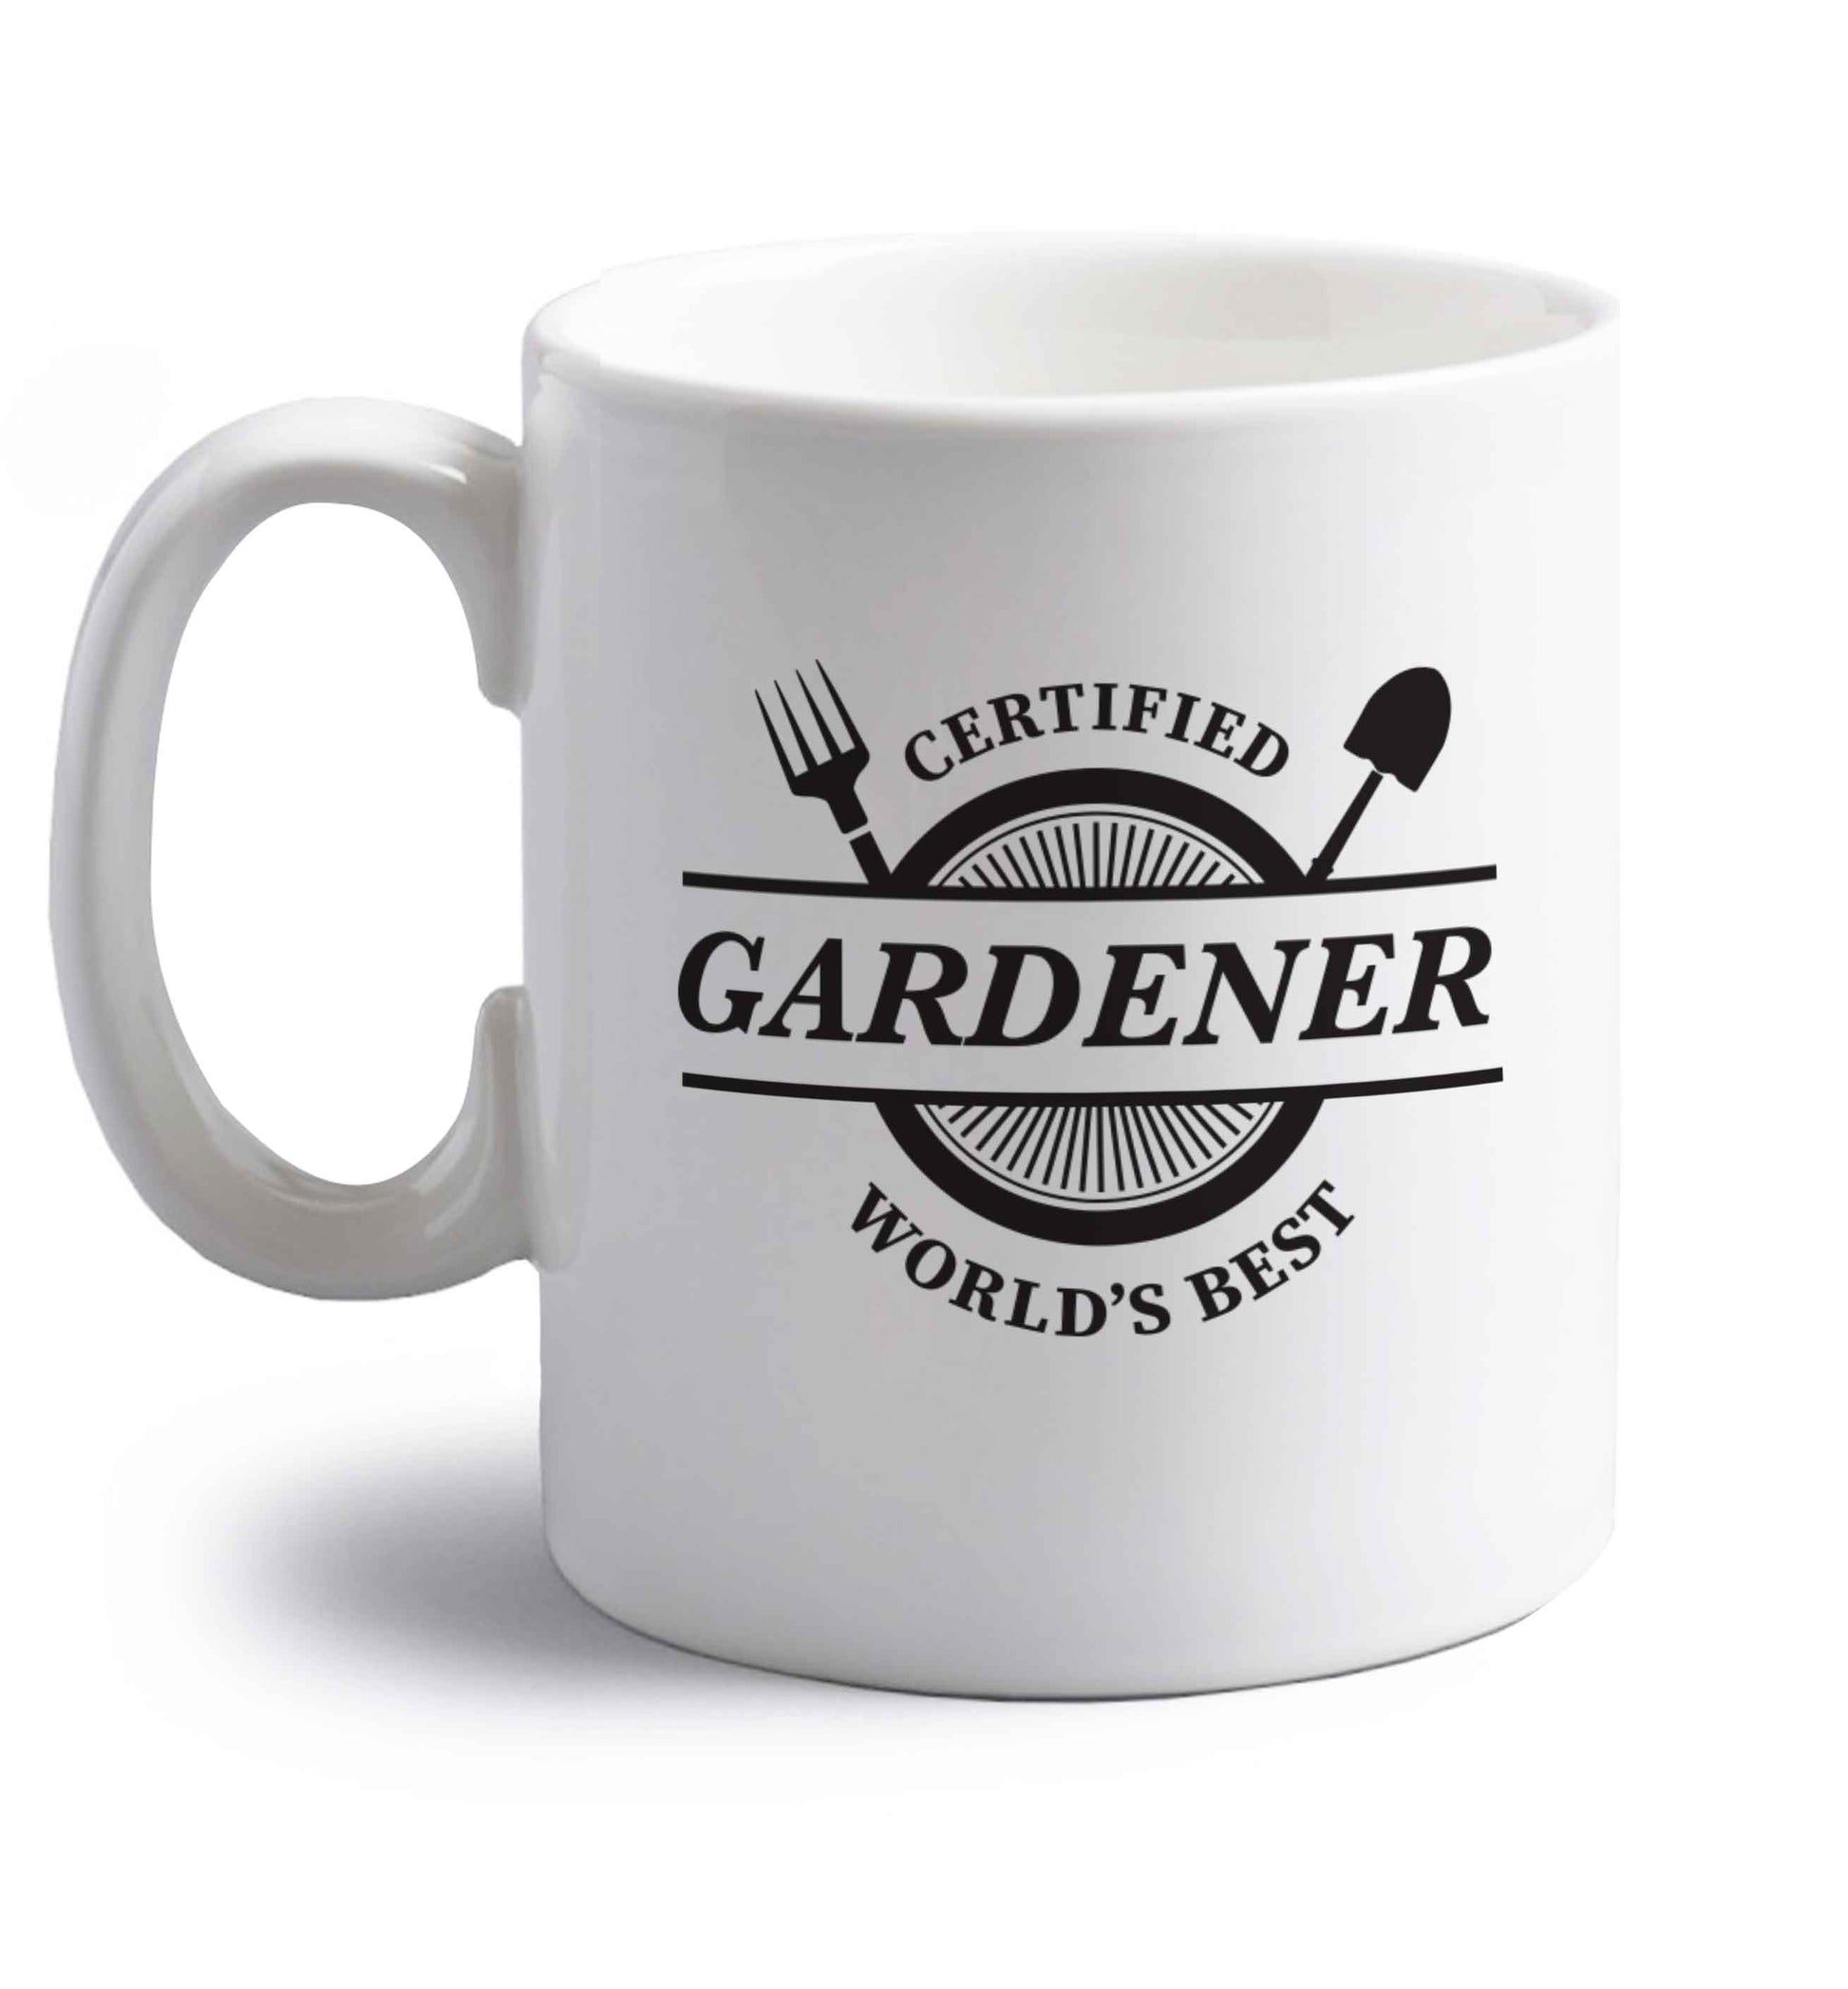 Certified gardener worlds best right handed white ceramic mug 